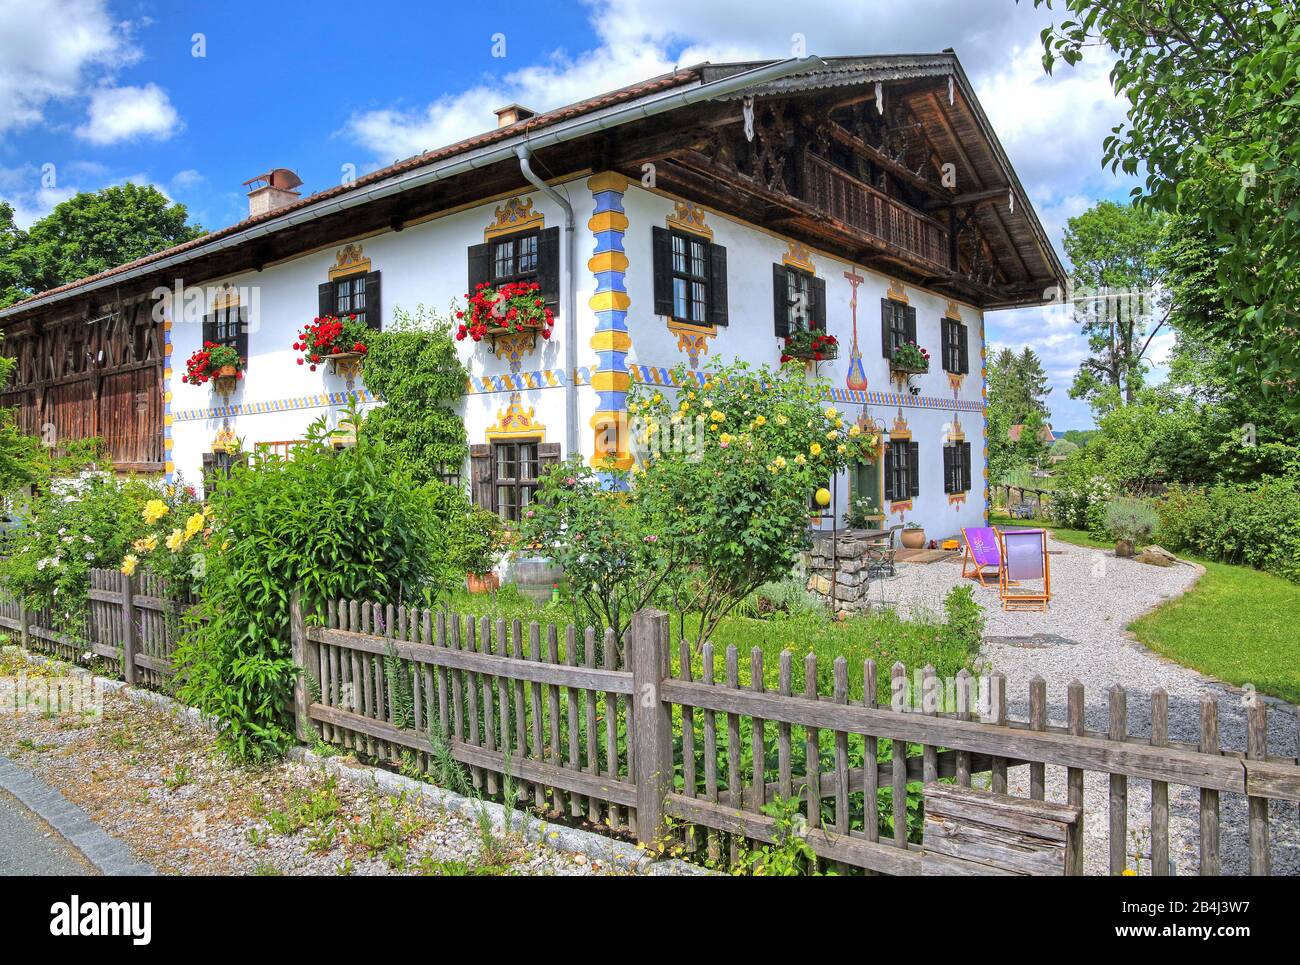 Oberbayerisches Landhaus mit Garten- und Blumenarrangement in Ohlstadt, Loisachtal, Oberbayern, Bayern, Deutschland Stockfoto